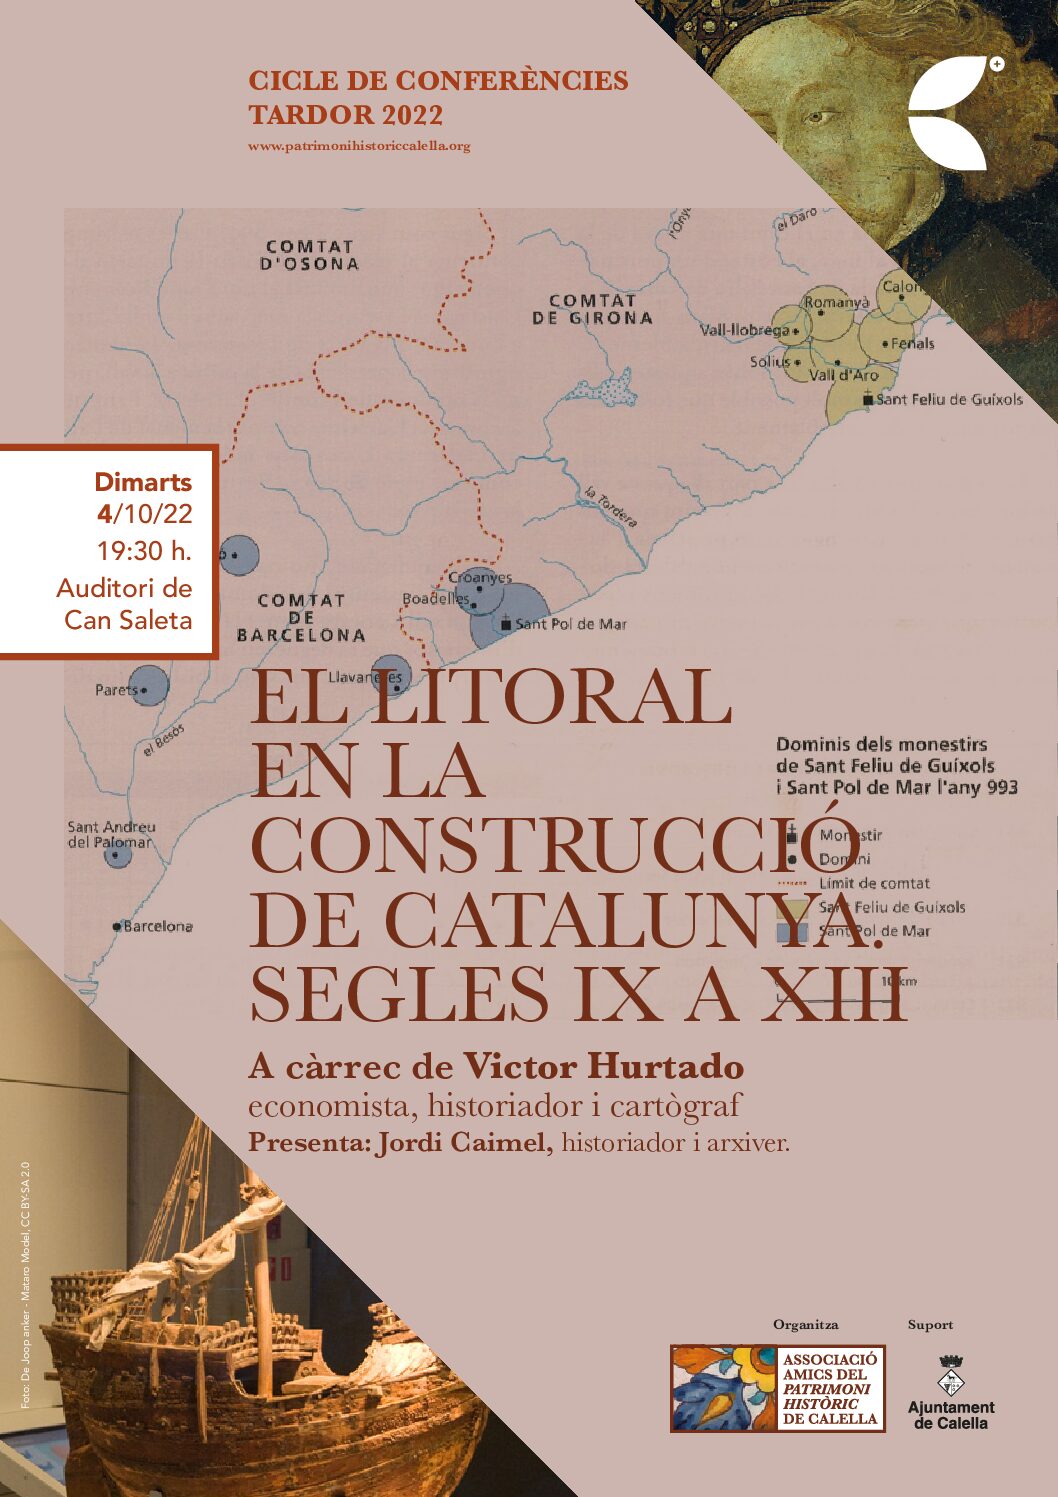 Conferència “El litoral en la construcció de catalunya. Segles IX a XIII”